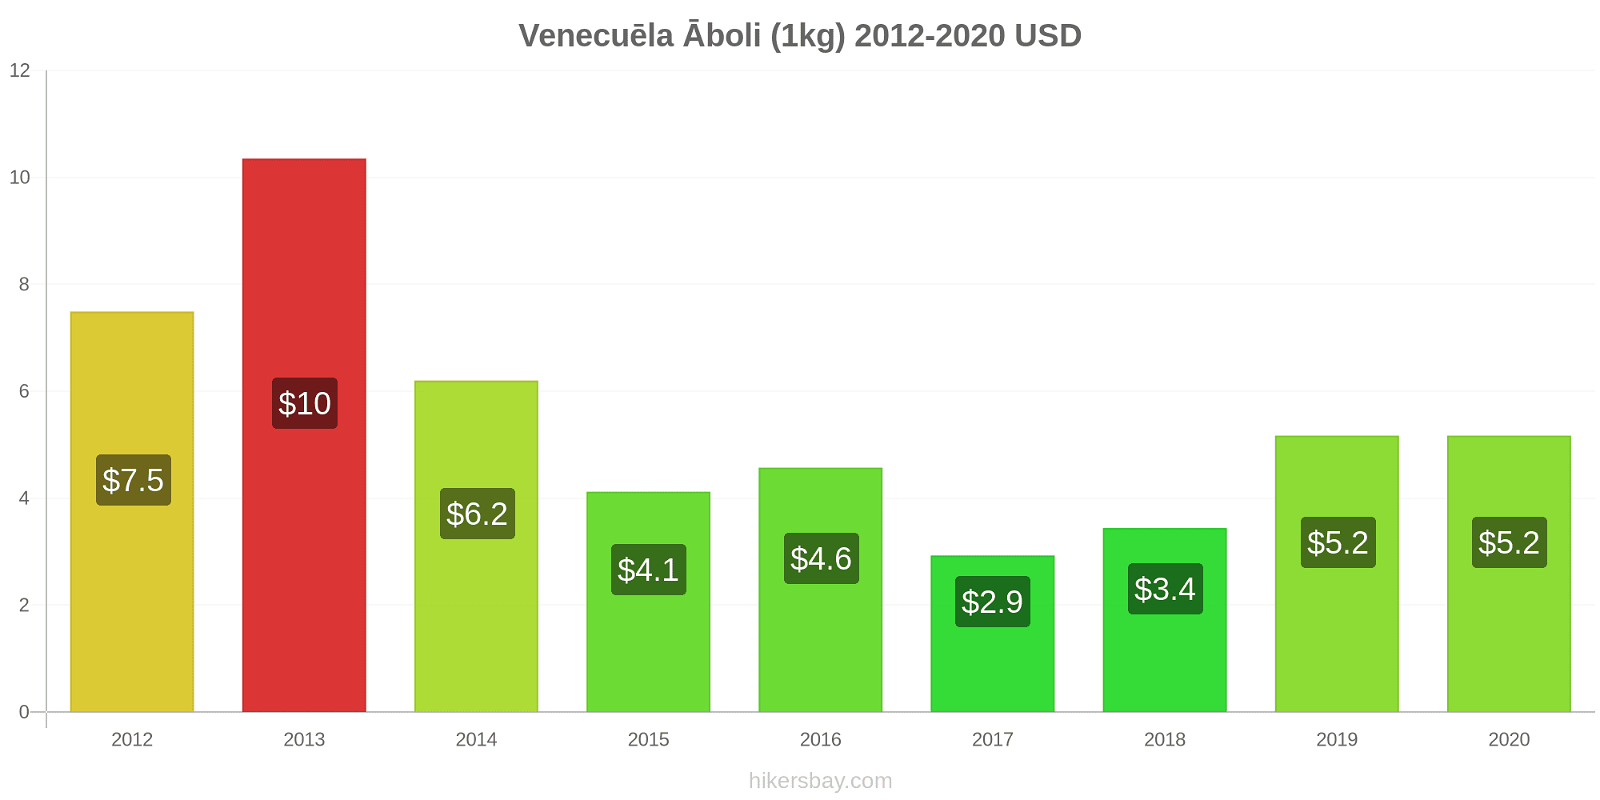 Venecuēla cenu izmaiņas Āboli (1kg) hikersbay.com